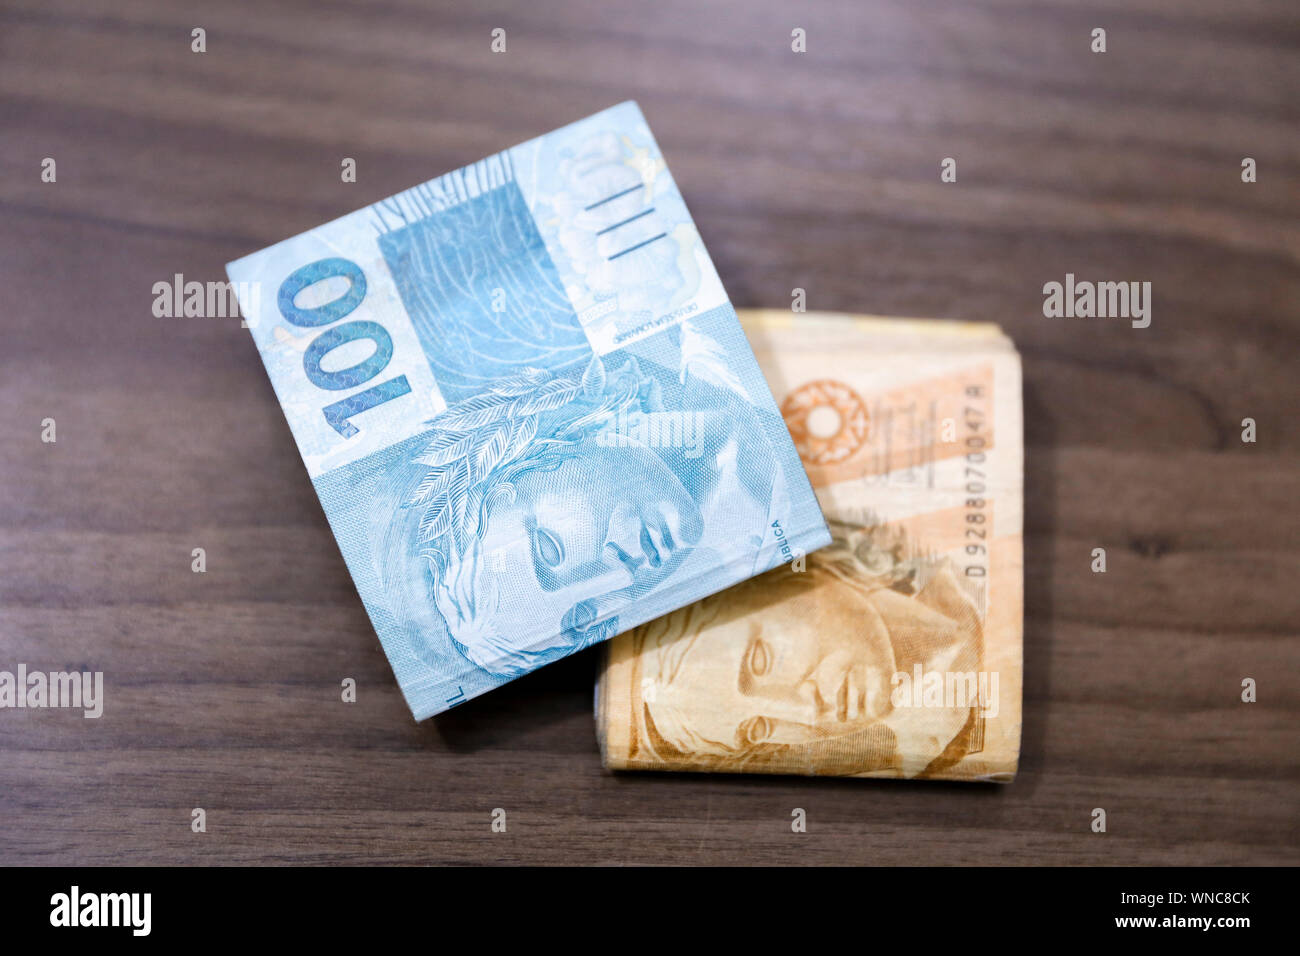 Billets Real brésilien notes, de l'argent en provenance du Brésil, les notes de Real, le Brésil Billet de BRL, monnaie brésilienne, l'économie et des affaires. Banque D'Images